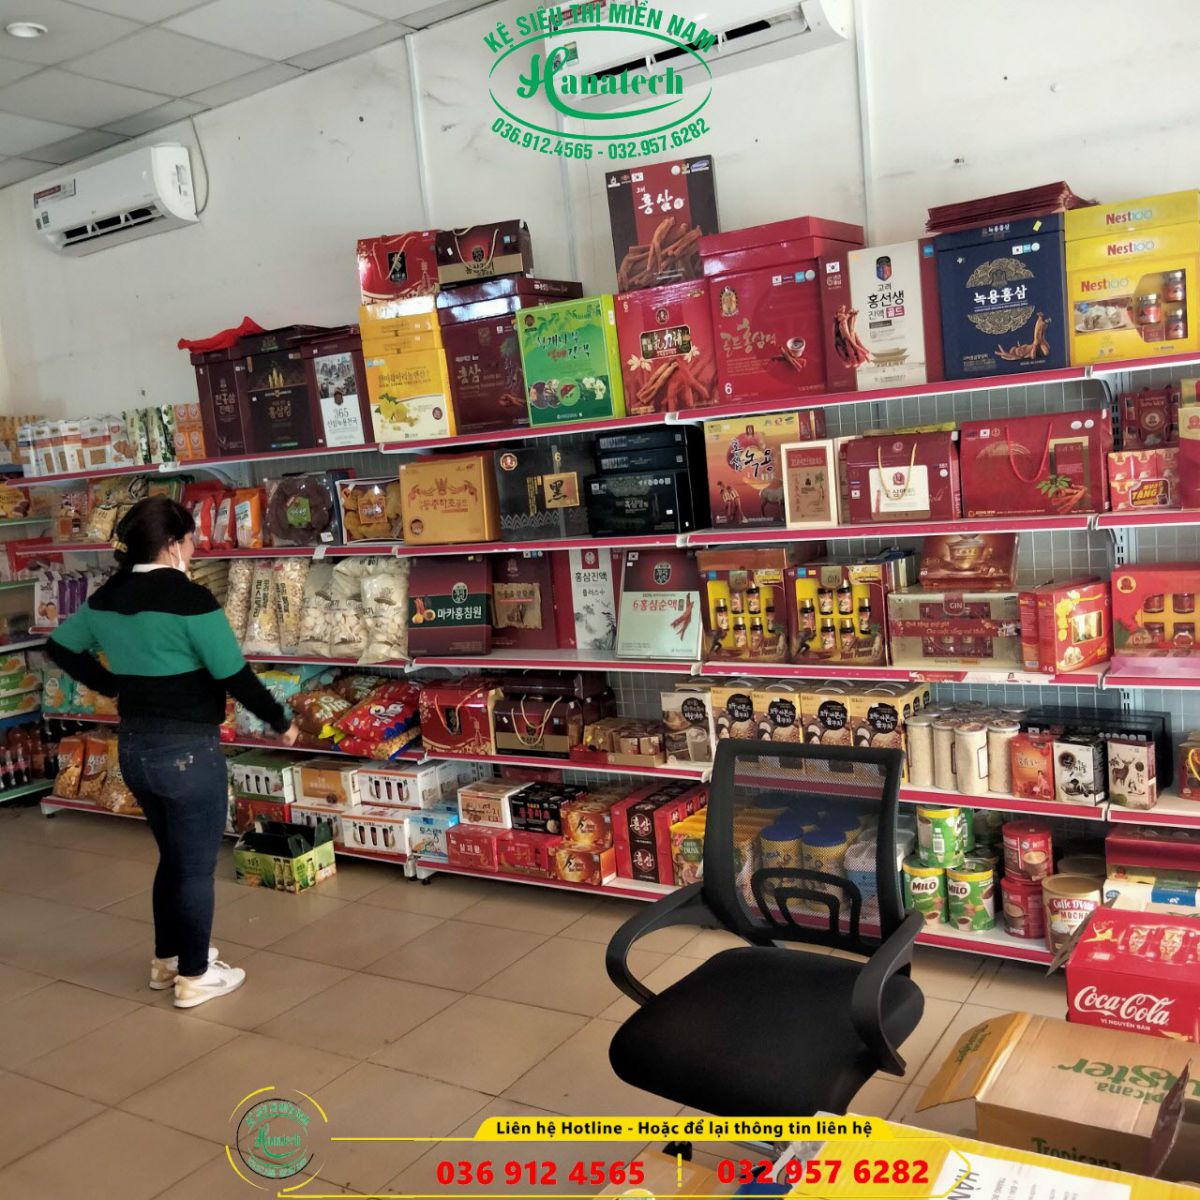 Giá kệ cửa hàng tạp hóa tại Tây Ninh